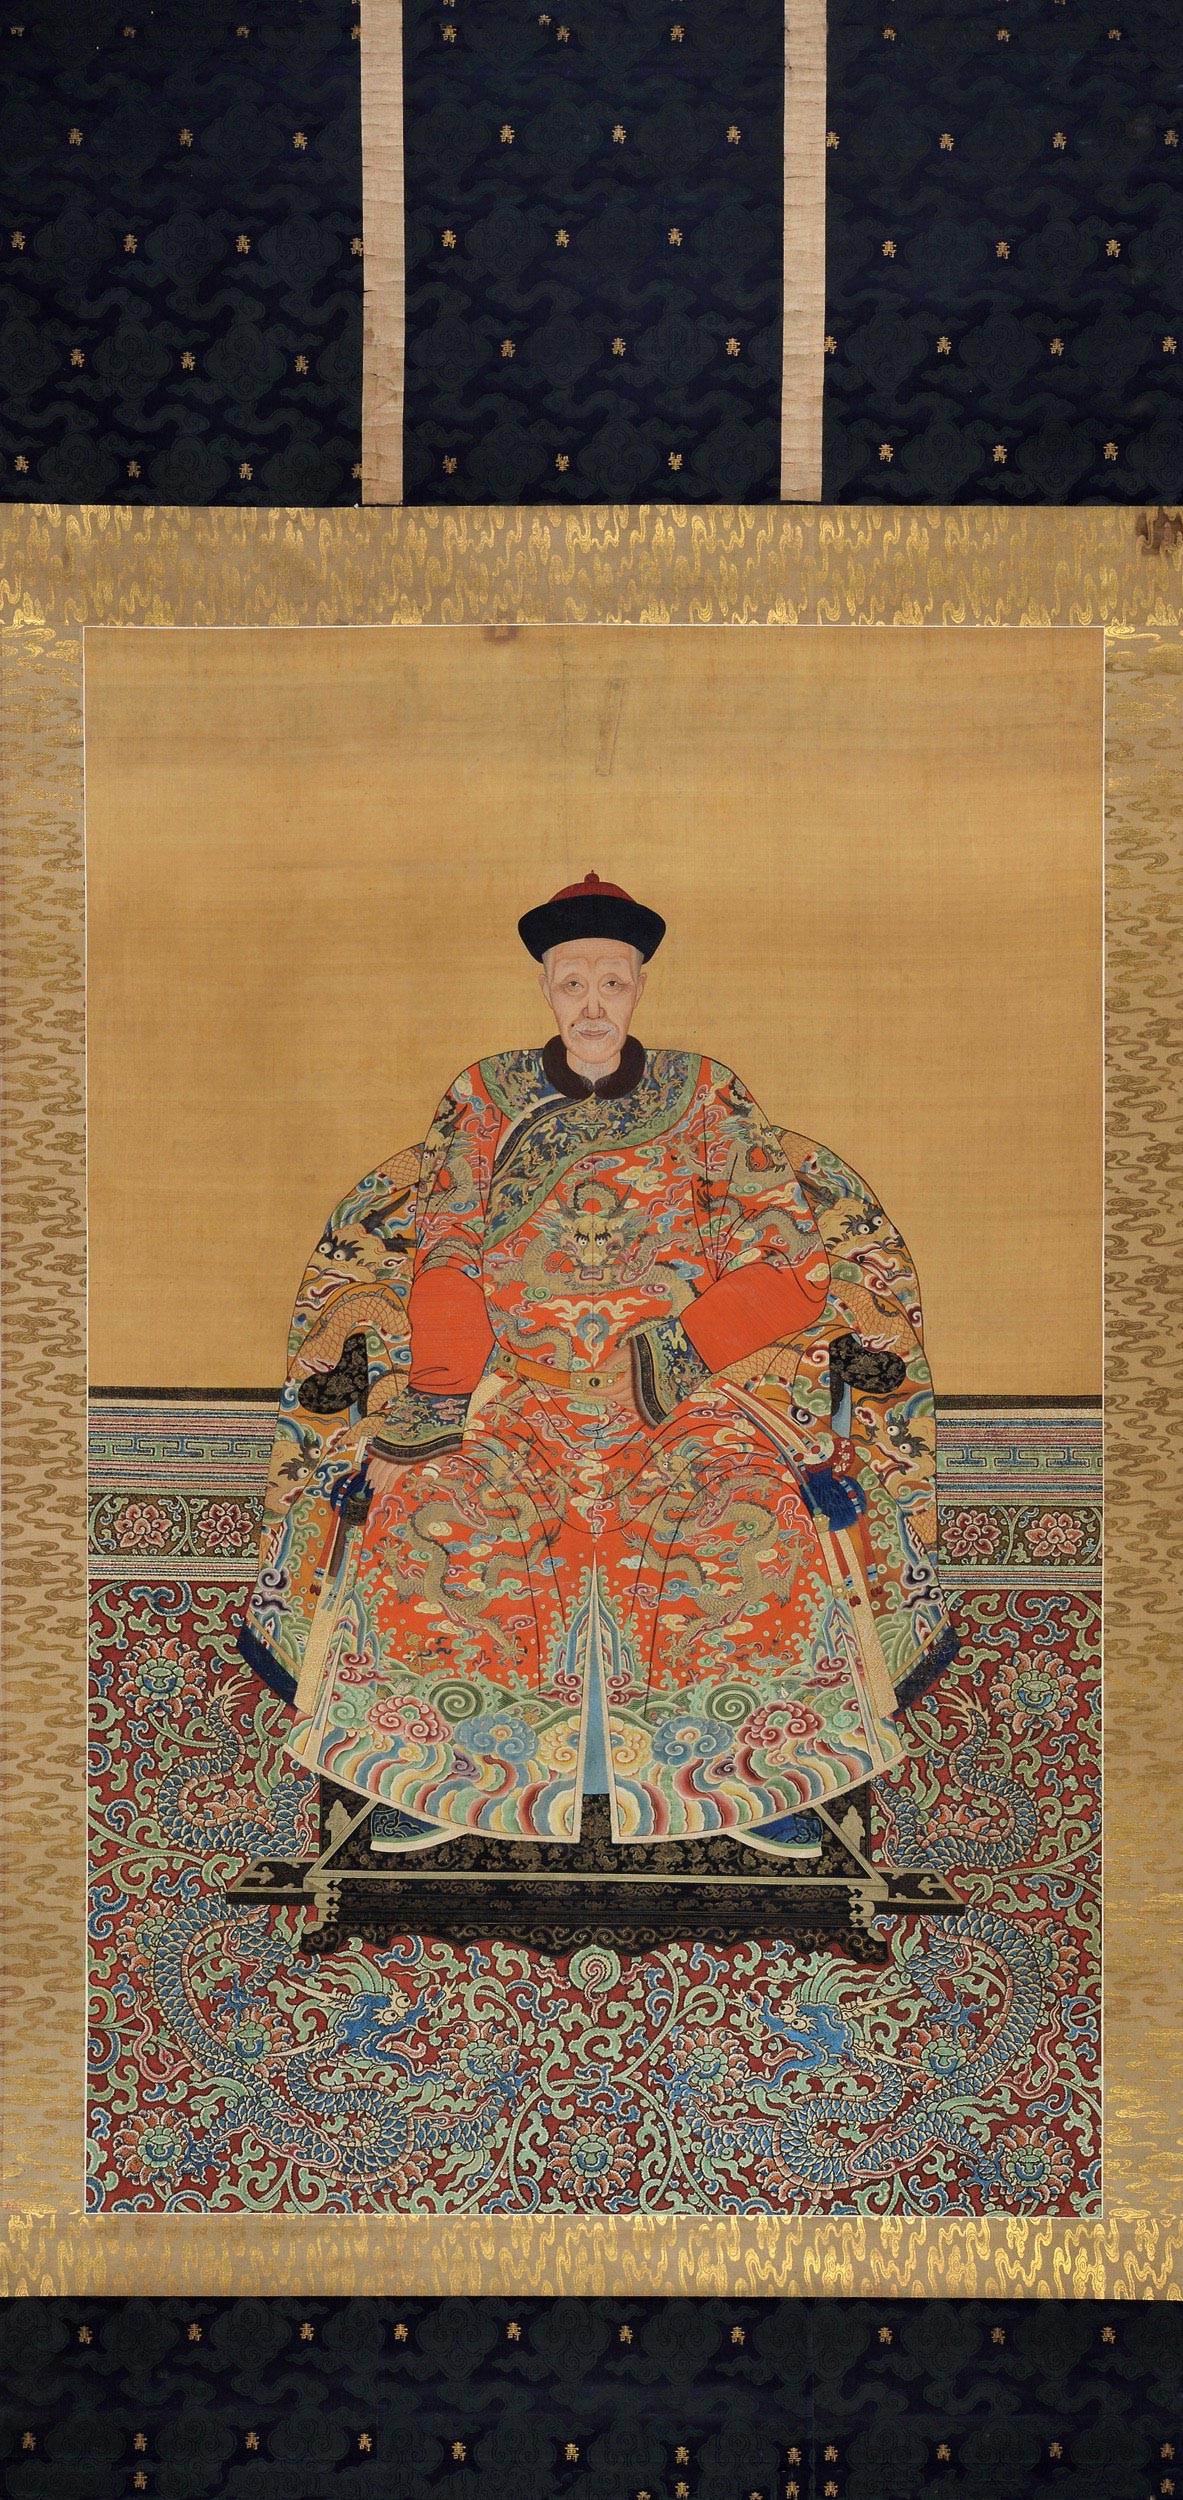 清朝皇帝衮服像图片